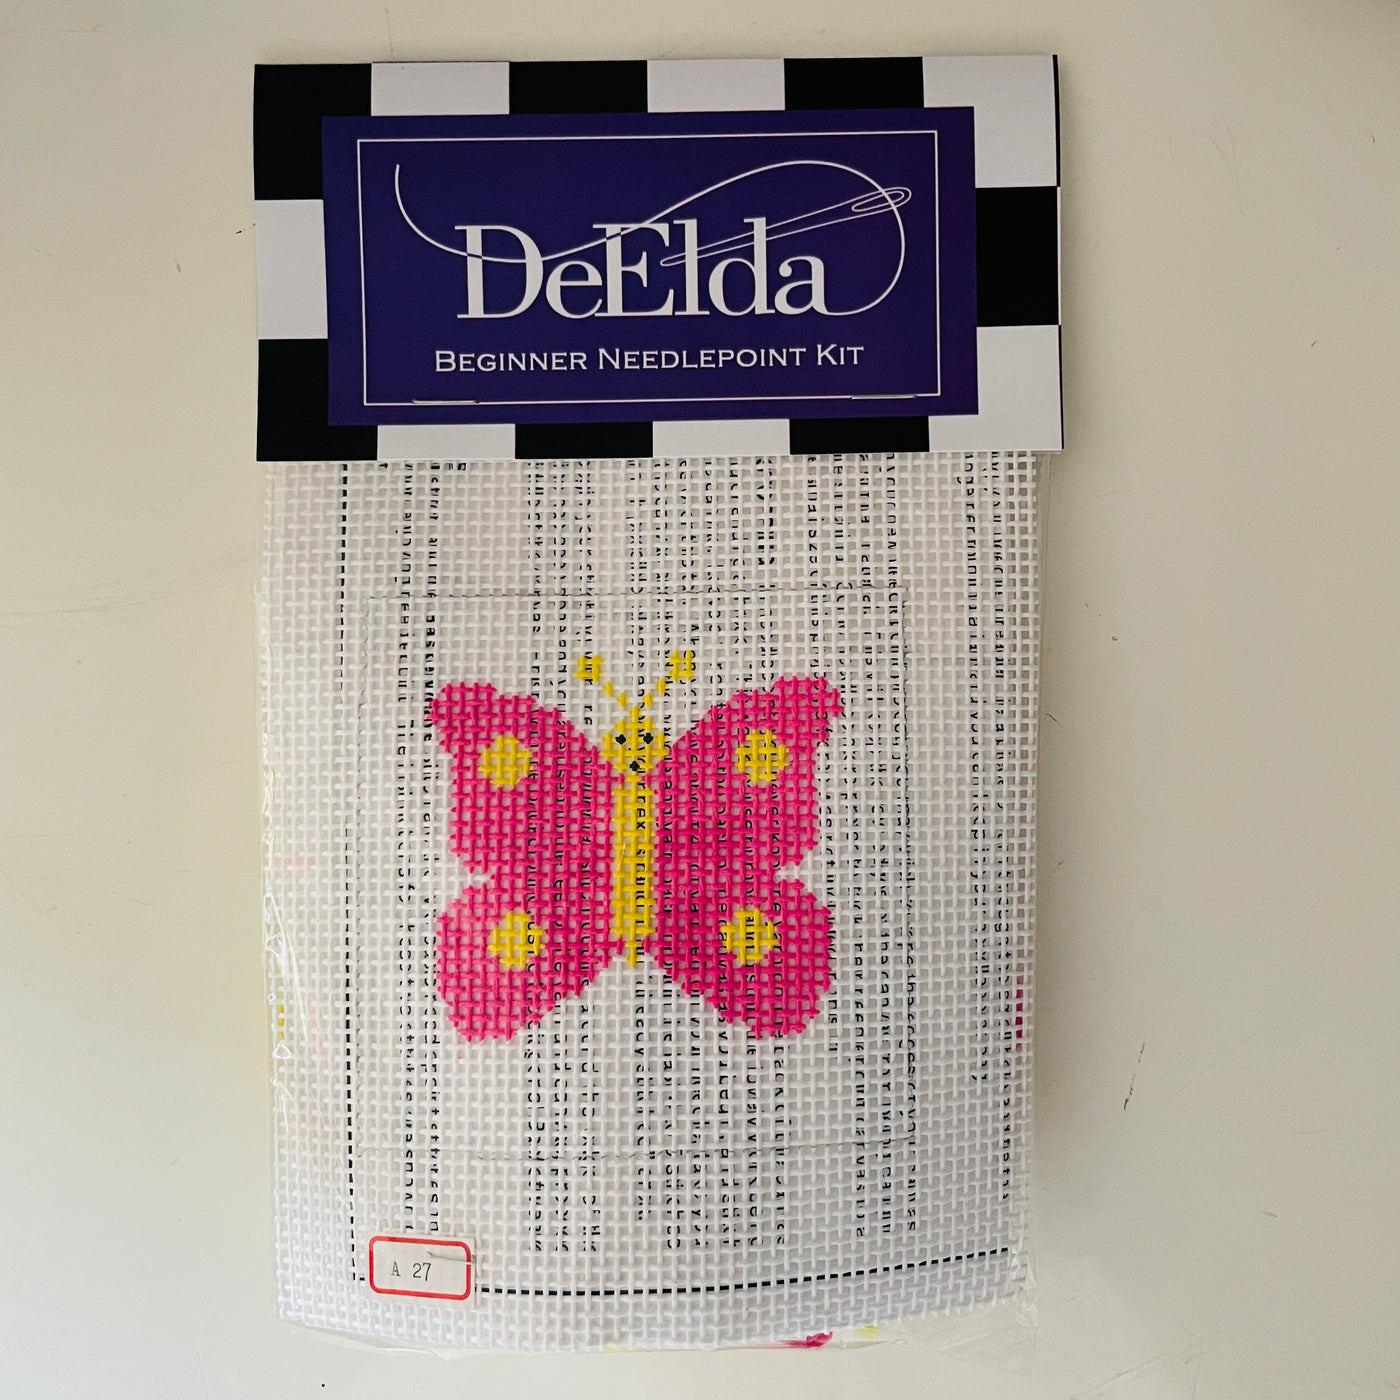 DeElda School Butterfly Kit (includes fiber)